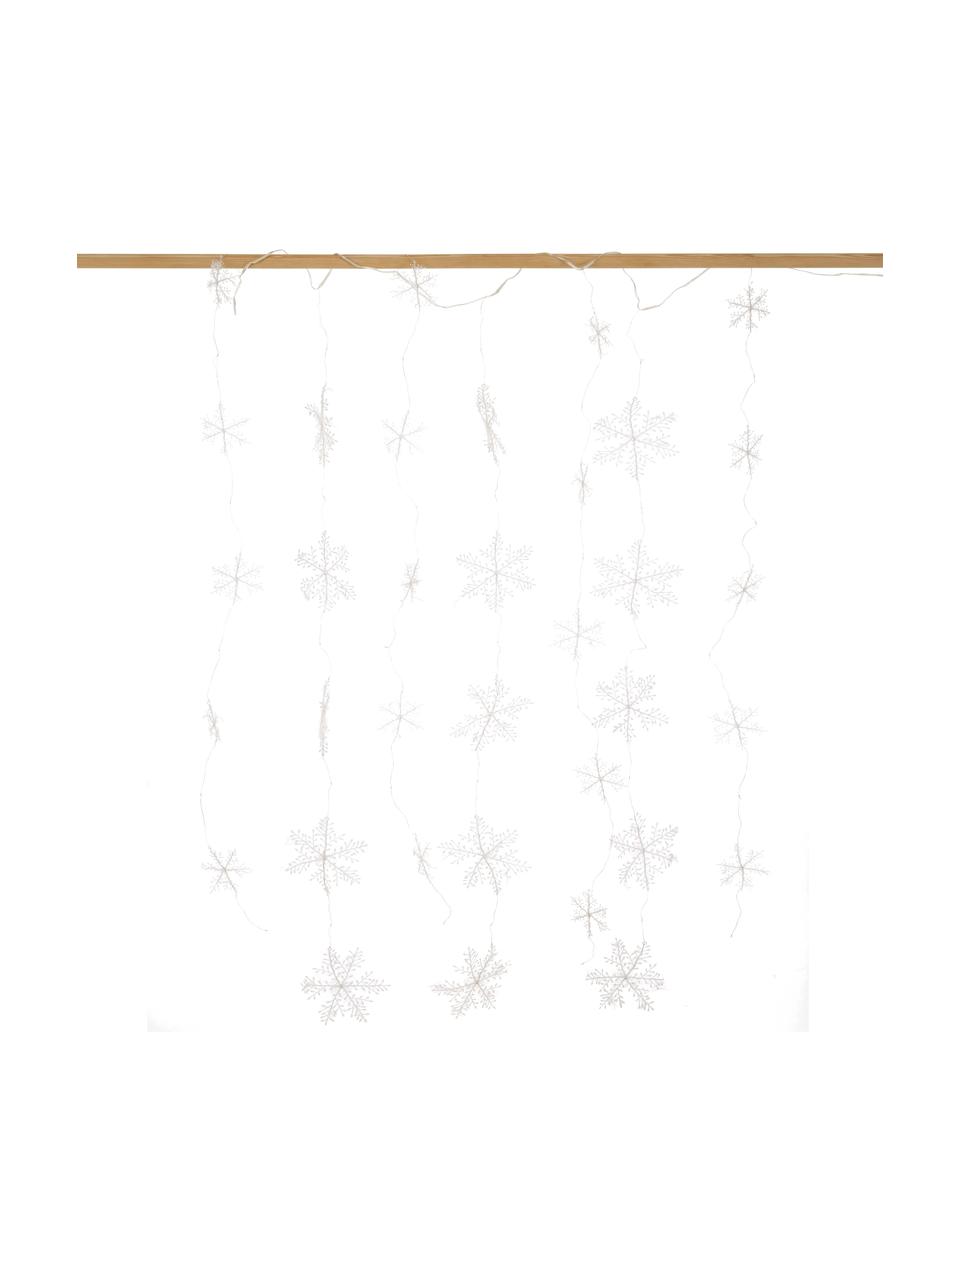 Dekoracja świetlna LED Snowflake, Tworzywo sztuczne, Odcienie srebrnego, D 137 cm